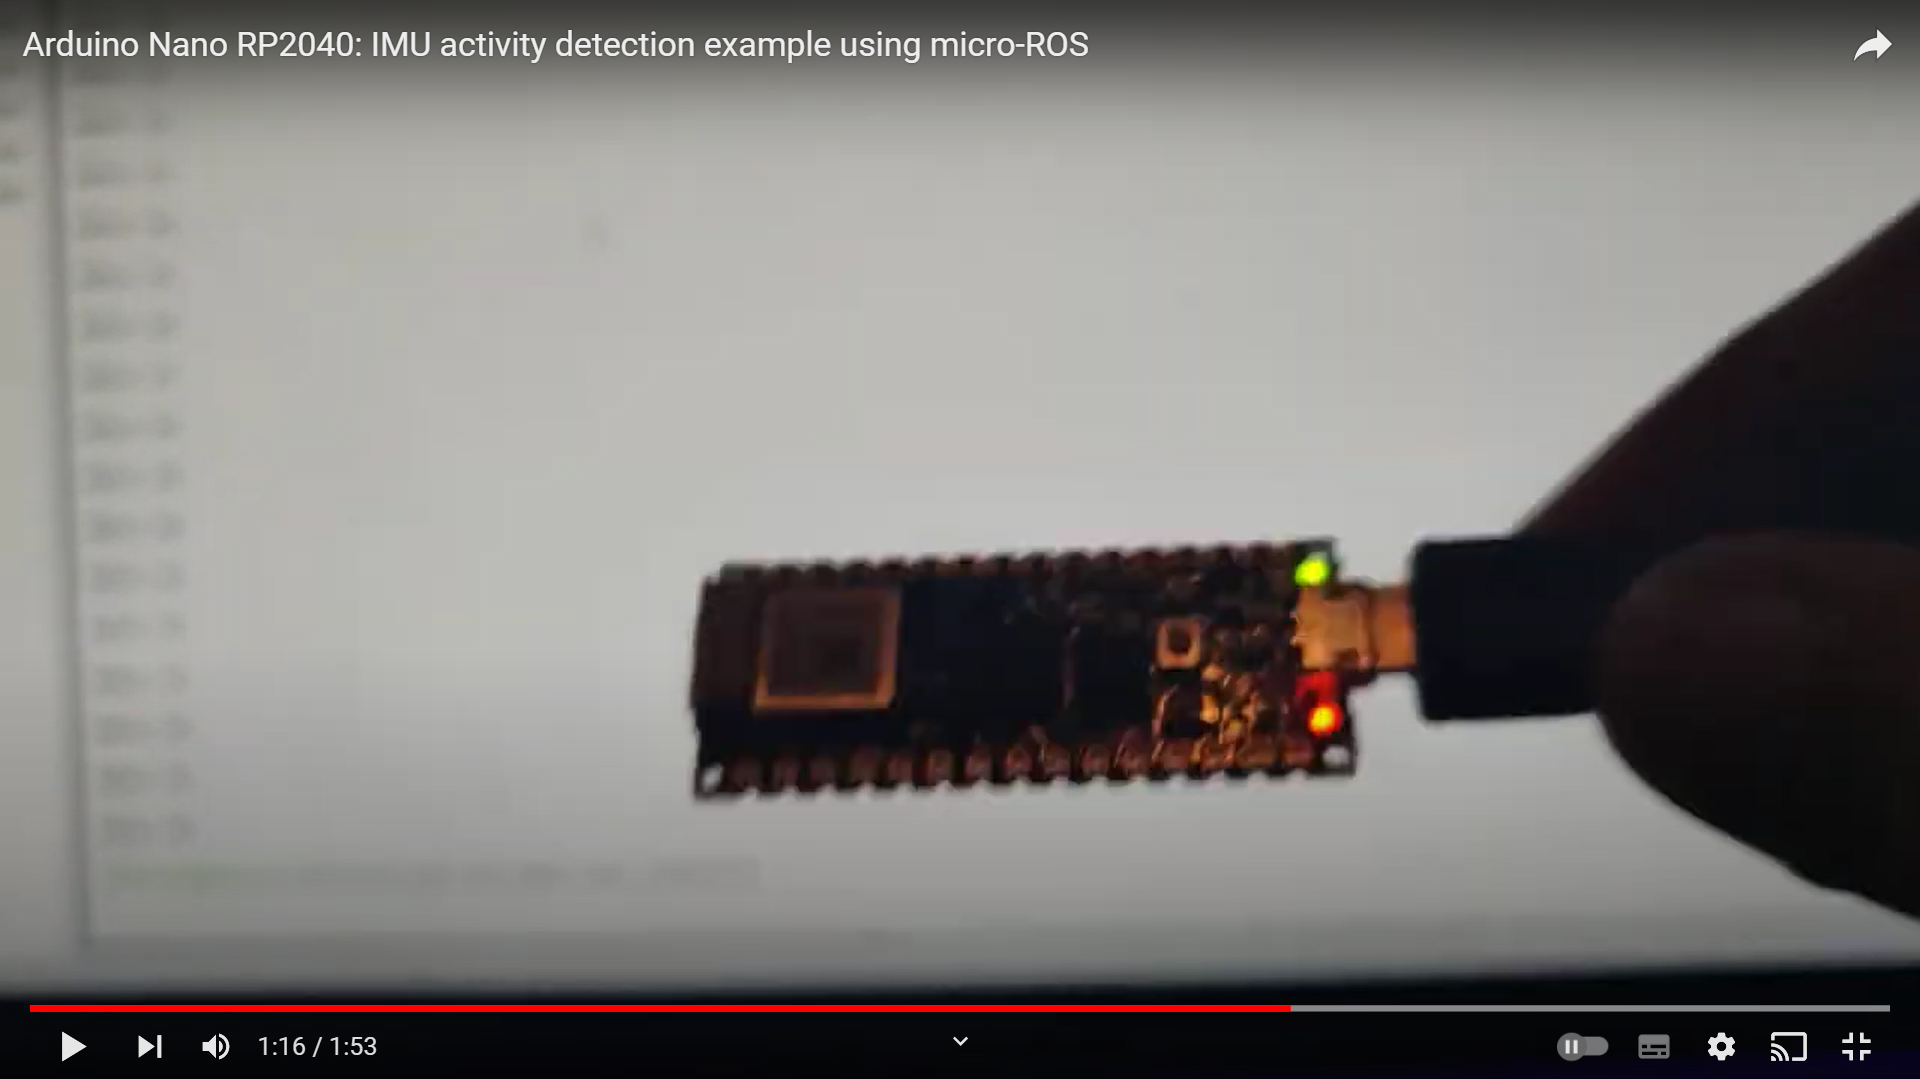 Nano RP2040 IMU Activity Detection using ML